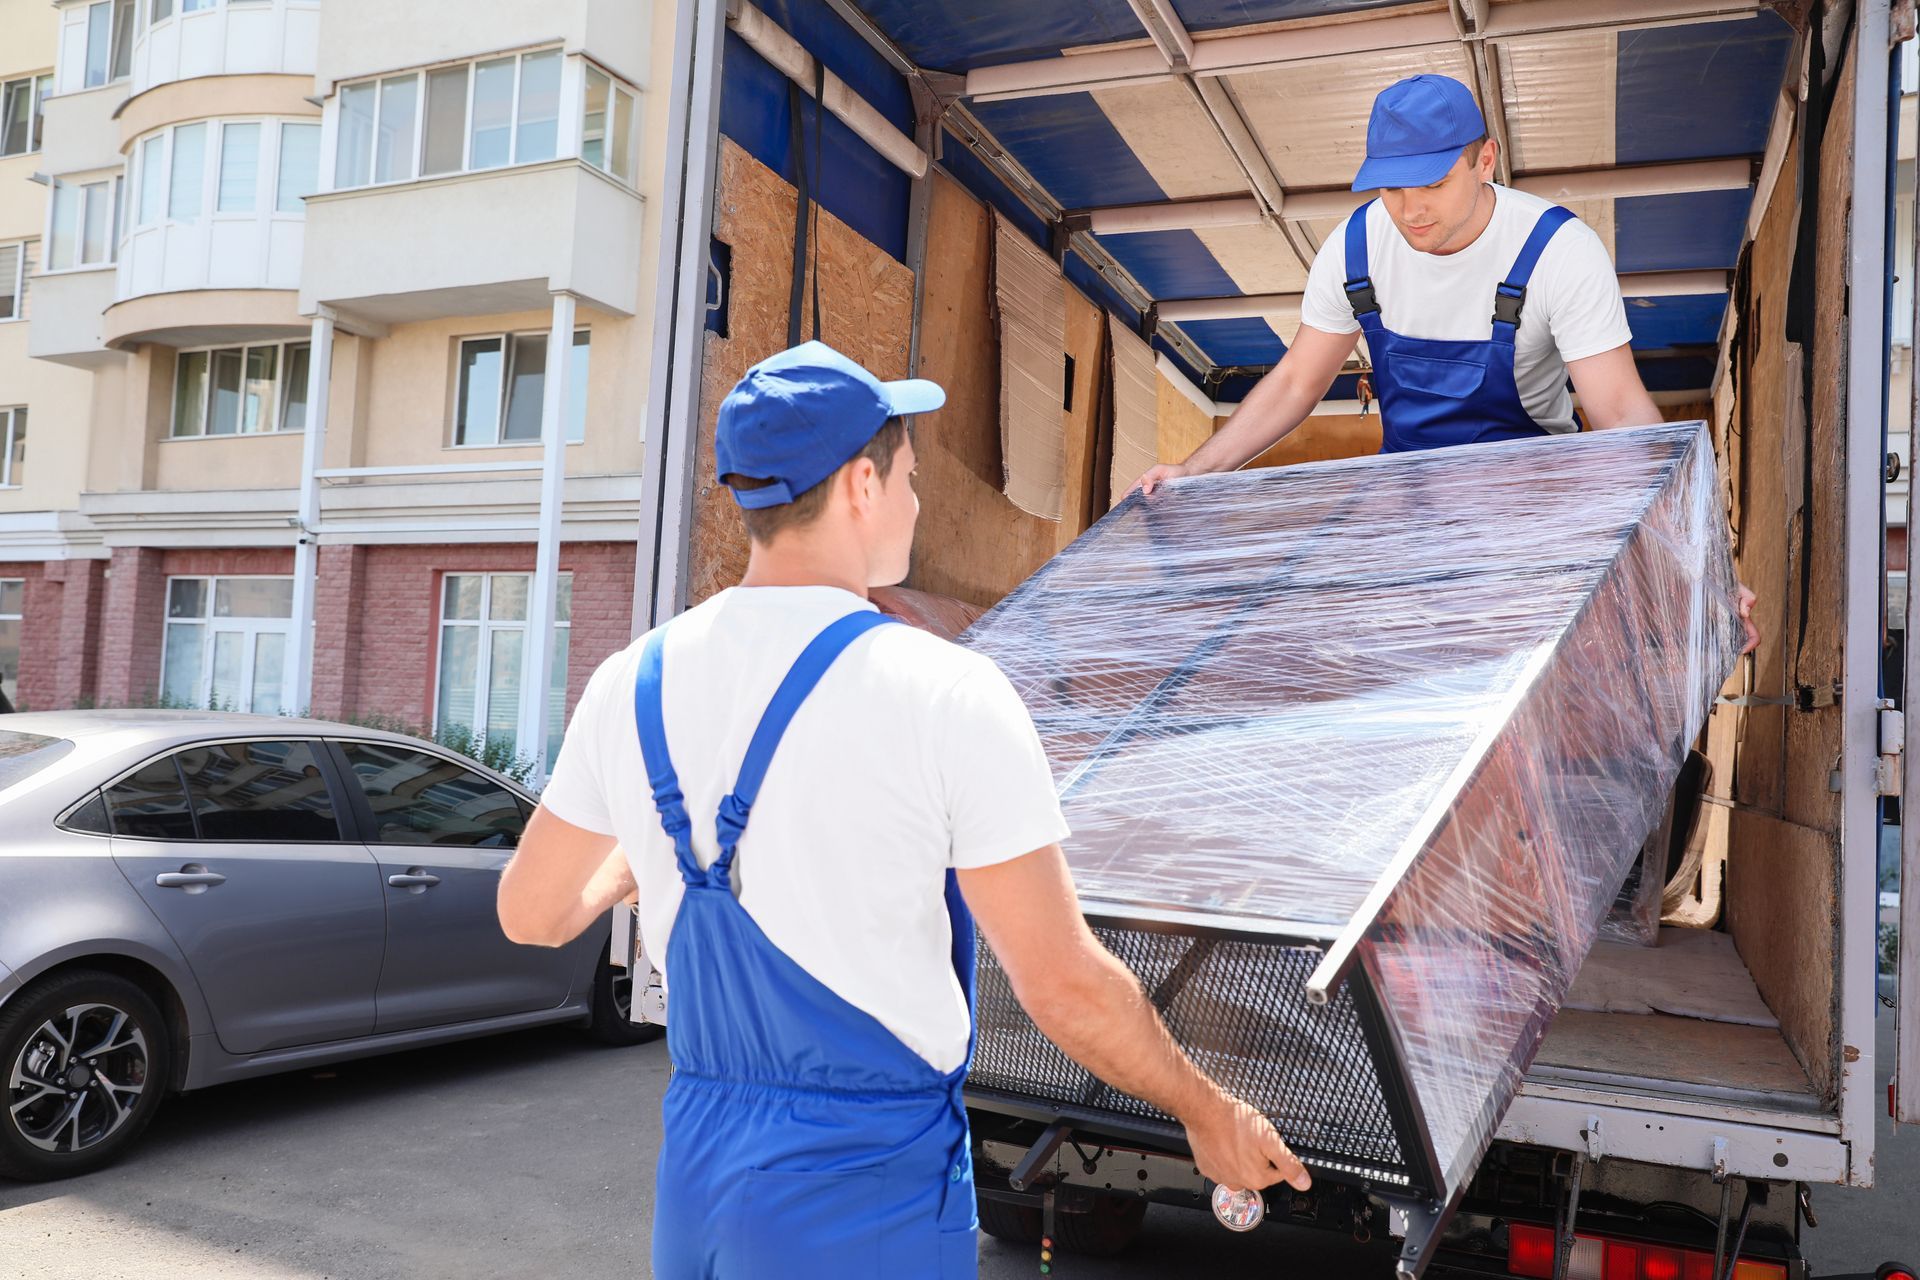 Deux déménageurs sortent un meuble emballé d'un camion